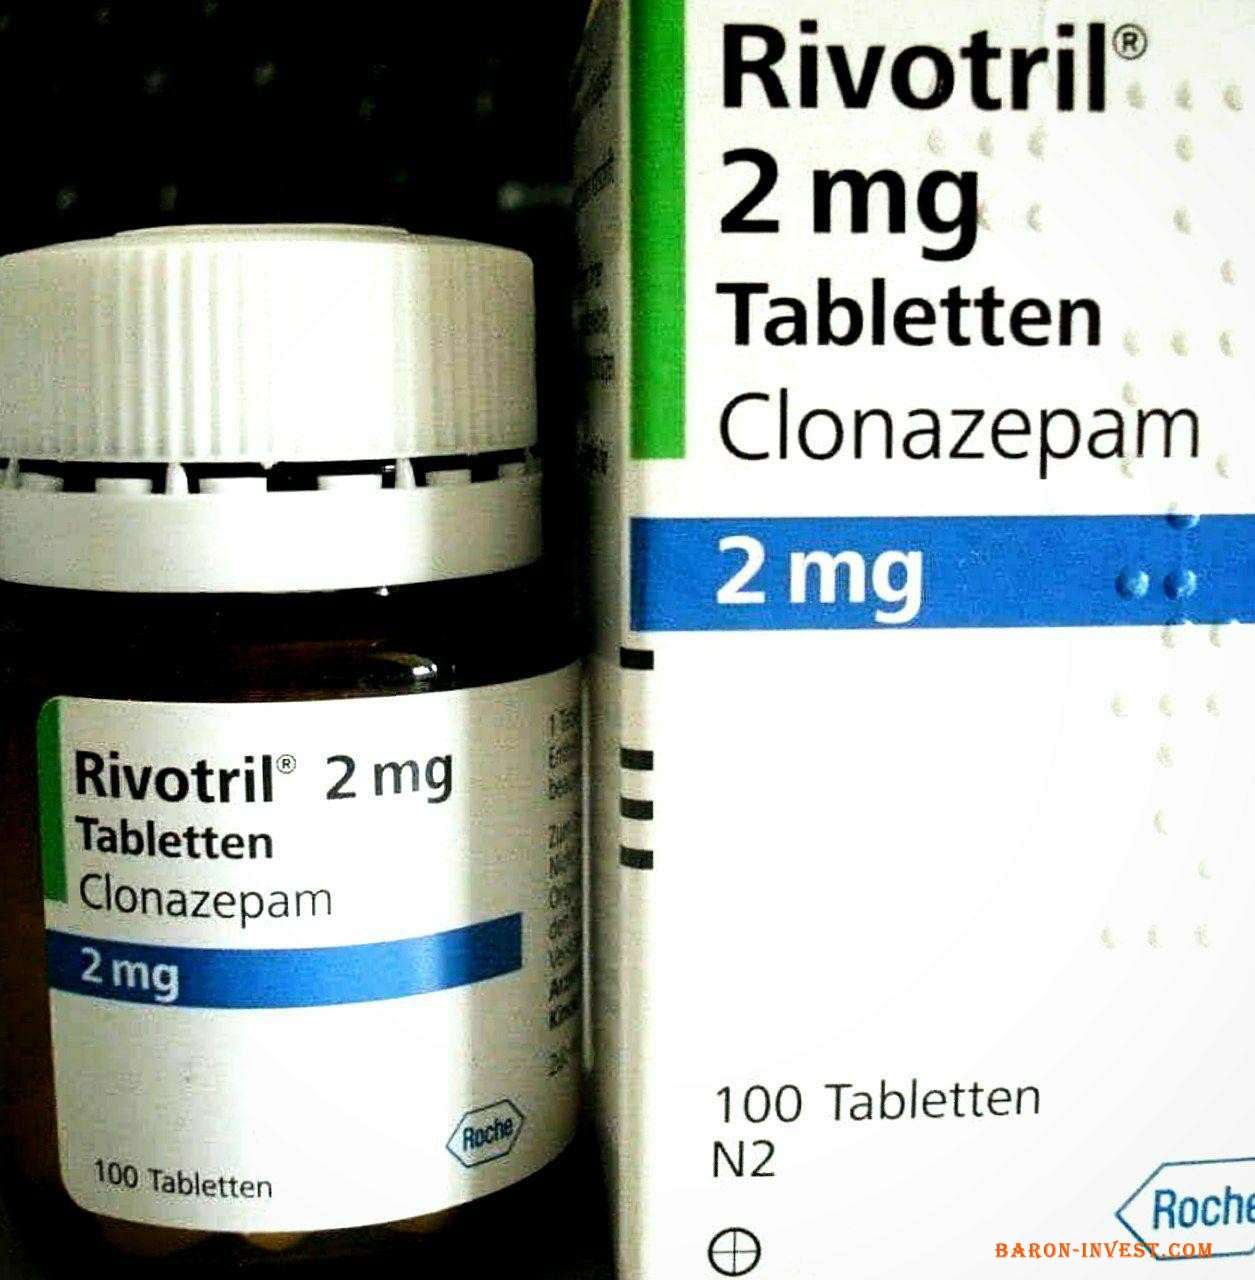 Rivotril® clonazepam Ривотрил клоназепам